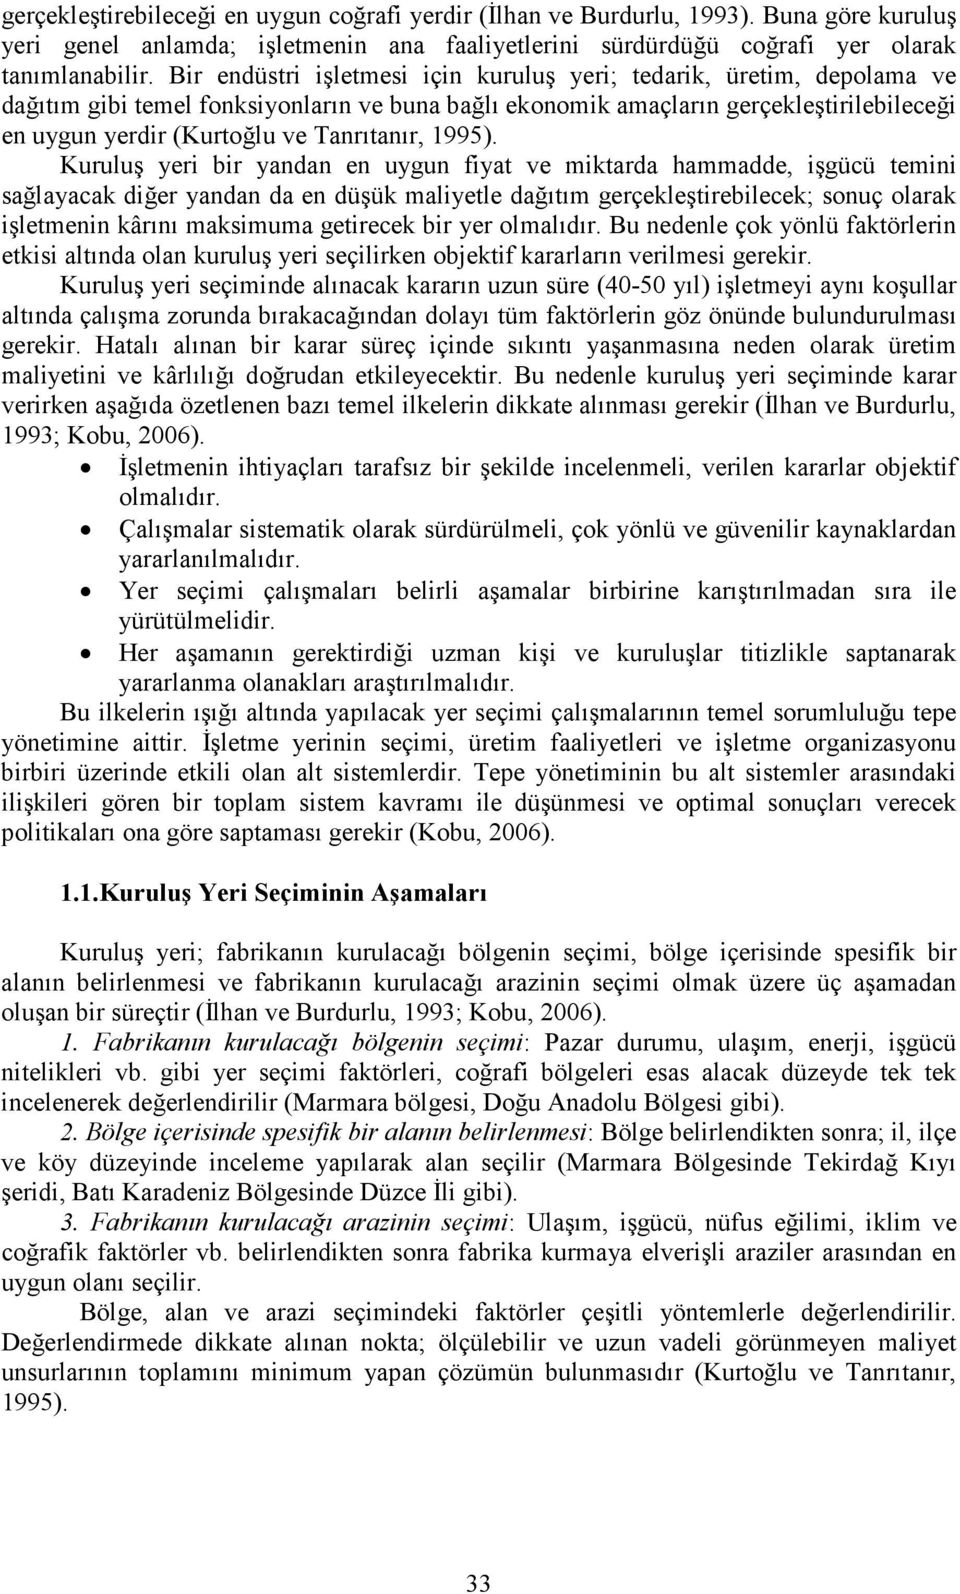 Tanrıtanır, 1995).